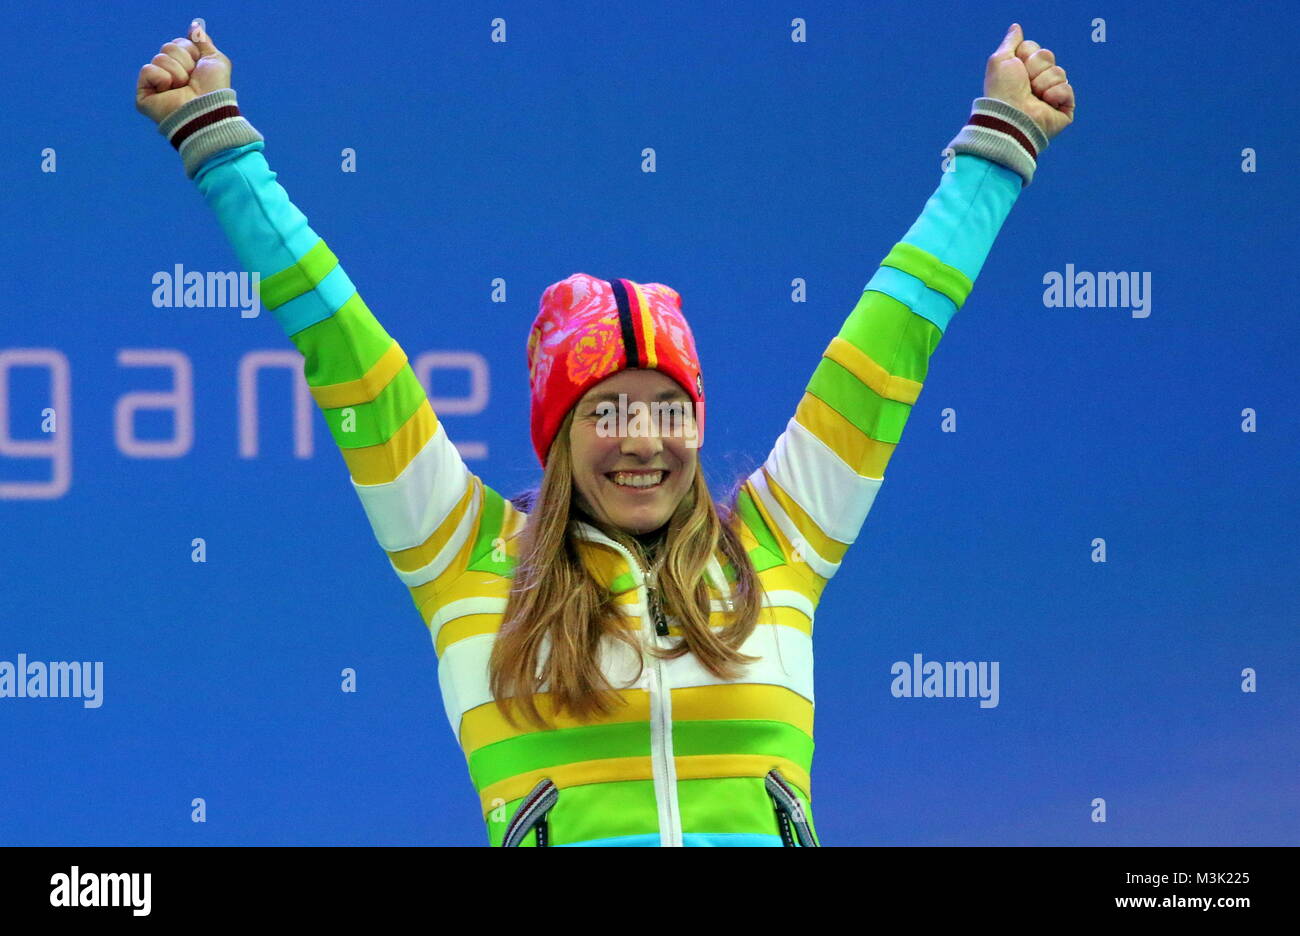 Anna Schaffelhuber fünffache Goldmedaillengewinnerin, bei den paralympiques bei der Siegerehrung à Rosa Khutor Ski Alpin 6. Jeux paralympiques Jeux paralympiques Tag Sotschi Sotschi 2014 / 2014 Jeux paralympiques d'hiver de Sotchi Banque D'Images